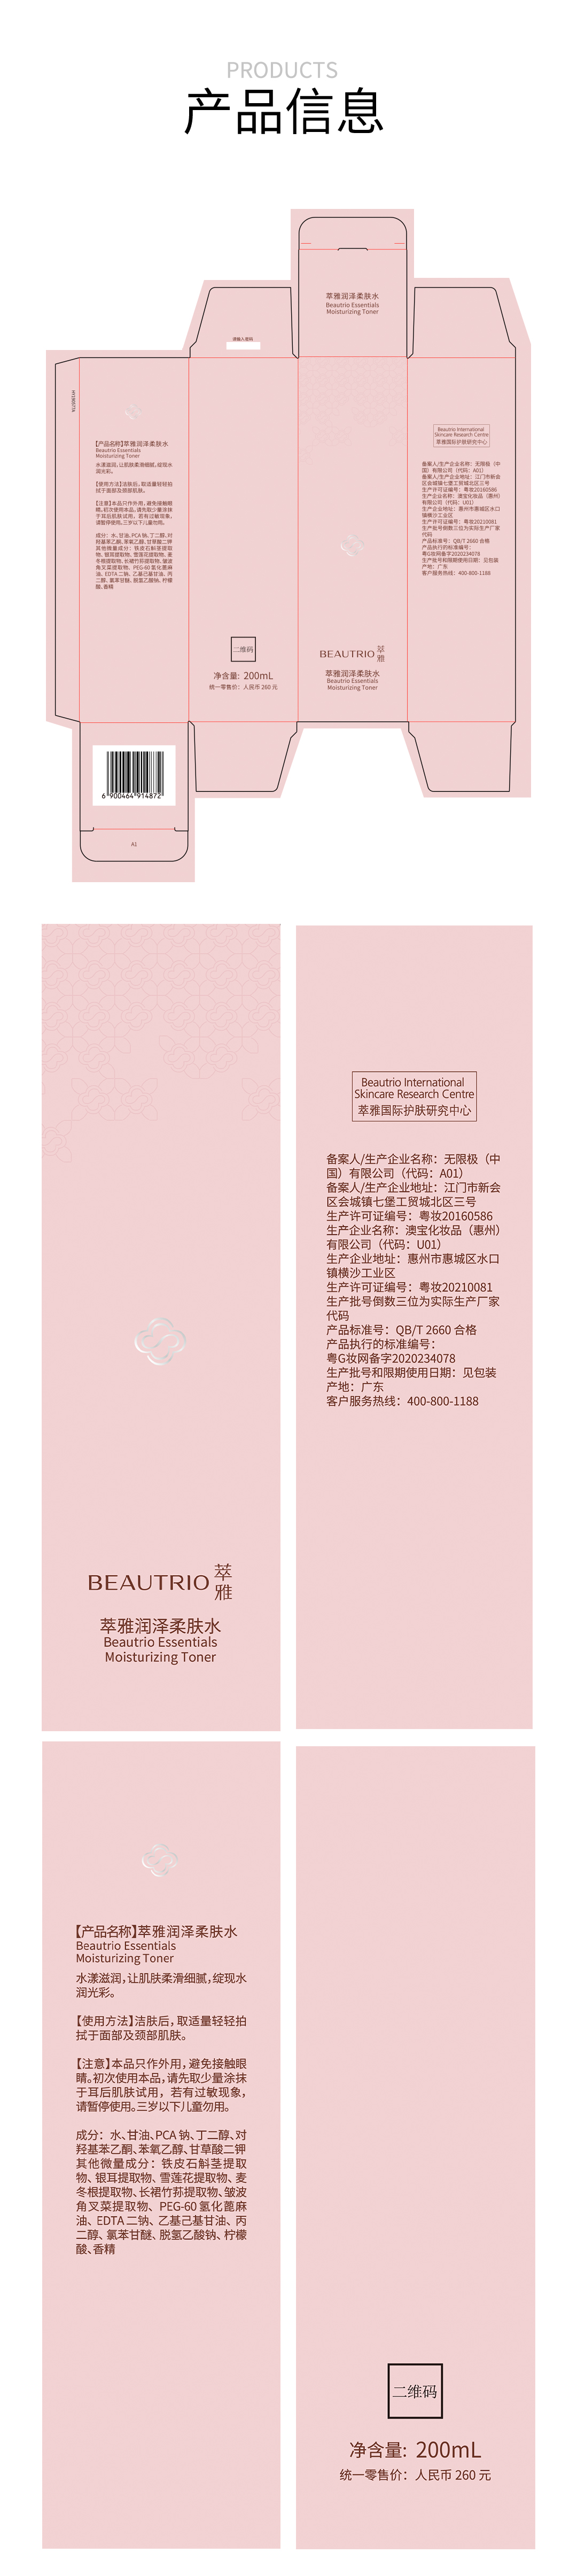 萃雅润泽柔肤水200ml(2020版)18129-06-详情页_14.jpg